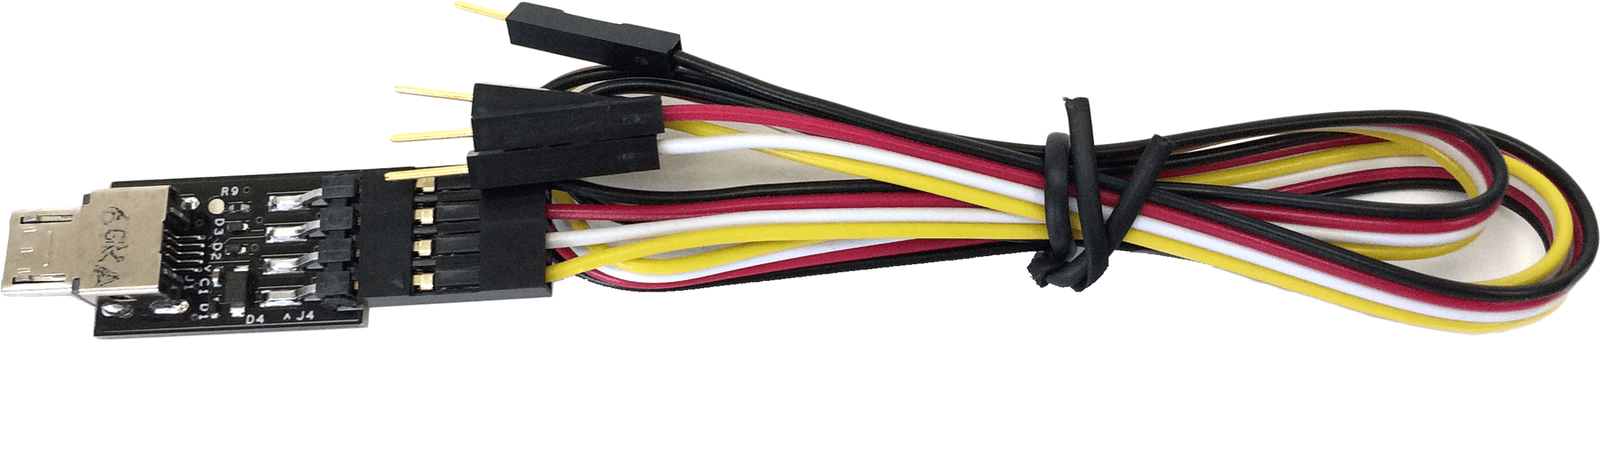 Sensel 60-90012 10 cm Počítačový kabel